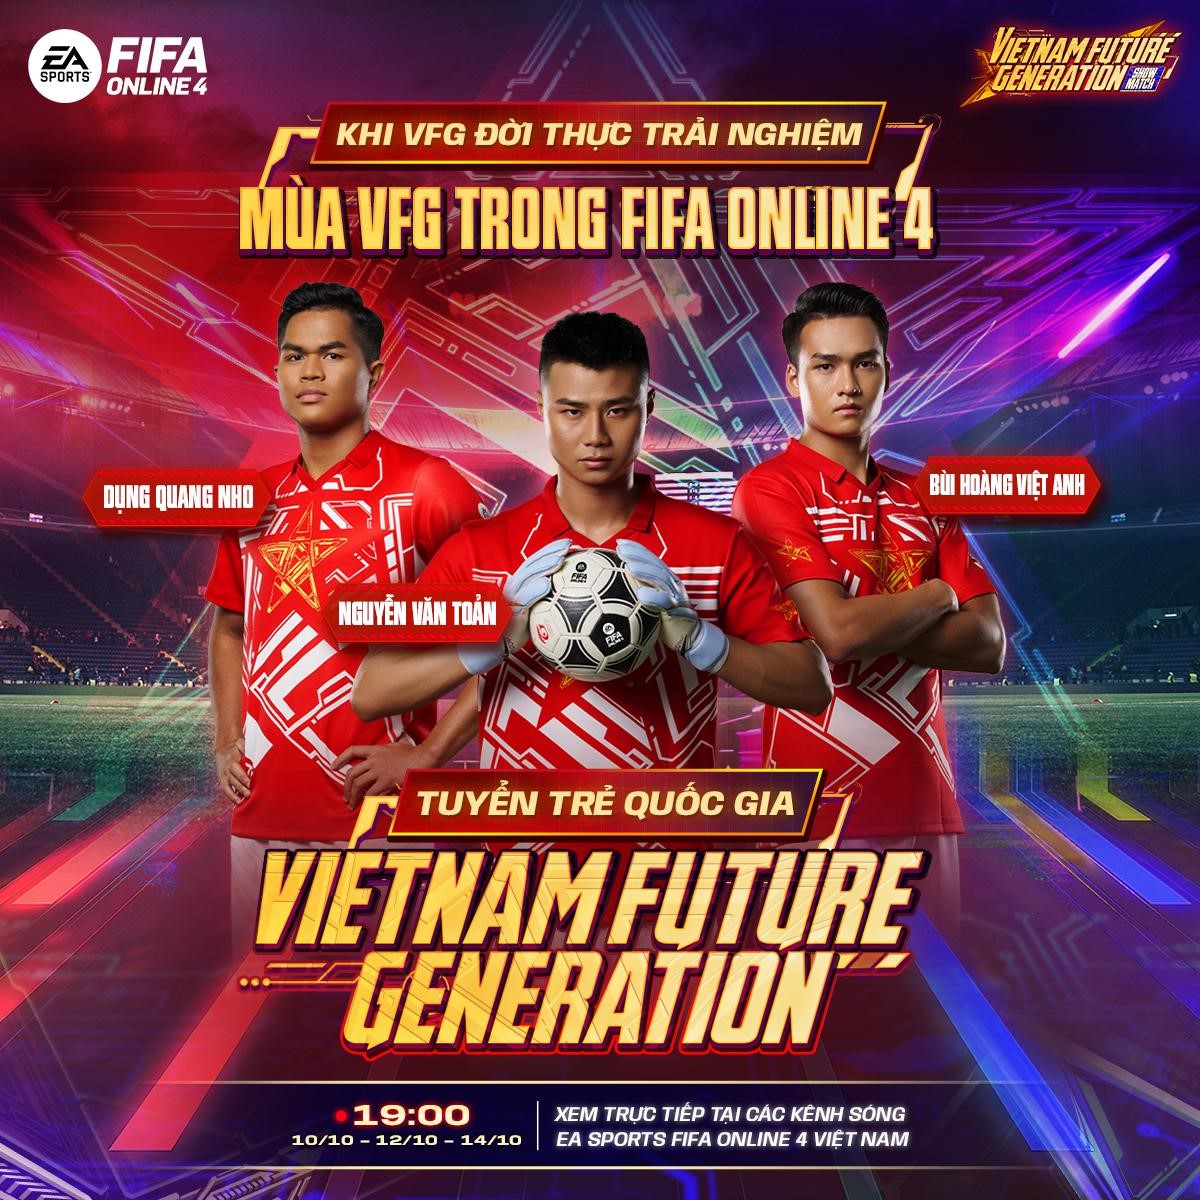 Refund Gaming tranh tài cùng U23 Việt Nam tại FIFA Online 4 VFG Showmatch 2022 3-16651245239391430245215-1665128183700-1665128183763382488627